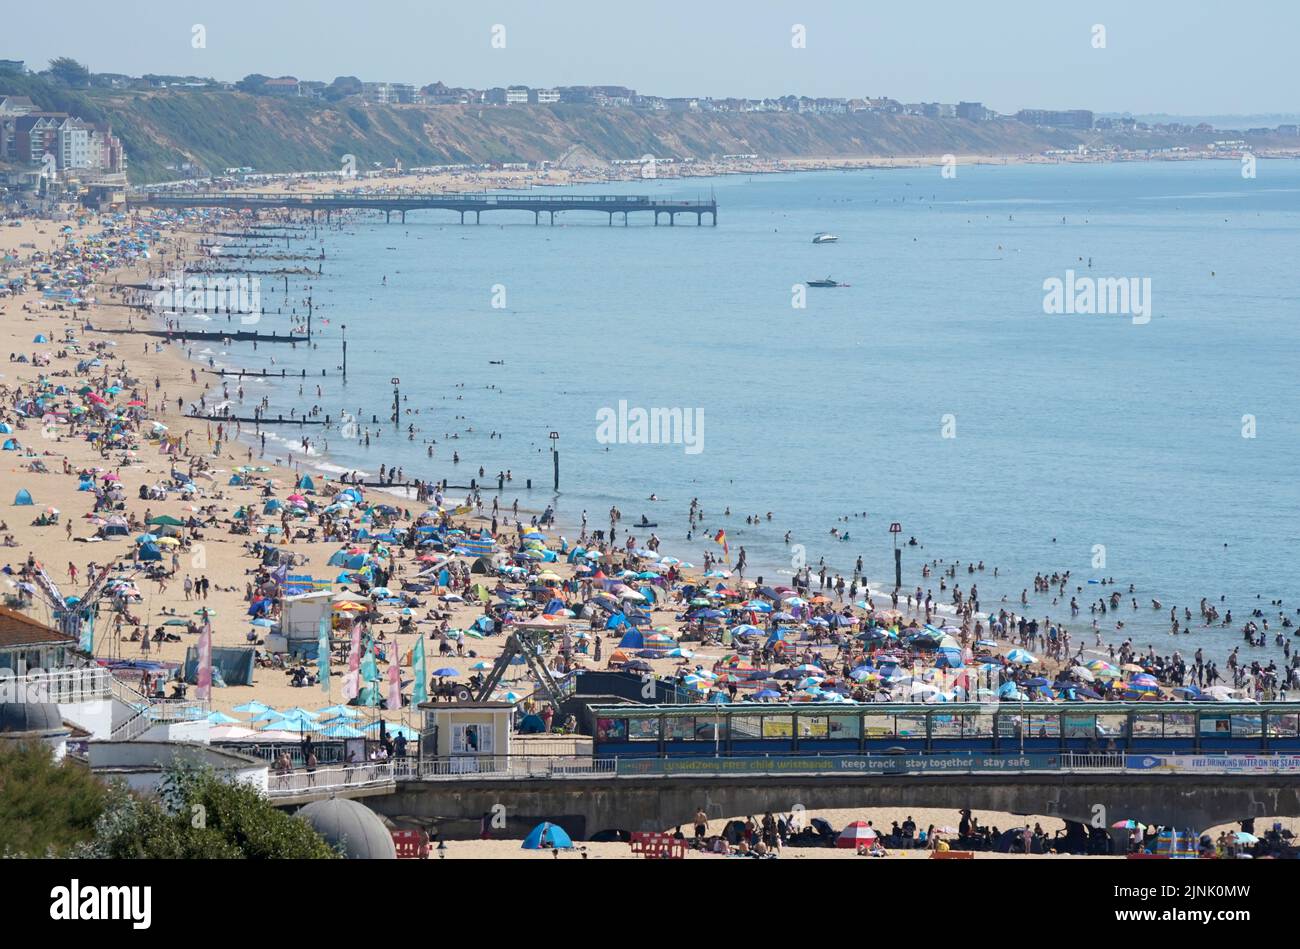 La gente se reúne en el calor de la playa de Bournemouth en Dorset. Está previsto que se declare una sequía en algunas partes de Inglaterra el viernes, con temperaturas que alcanzarán los 35C grados, lo que hace que el país sea más caliente que algunas partes del Caribe. Fecha de la foto: Viernes 12 de agosto de 2022. Foto de stock